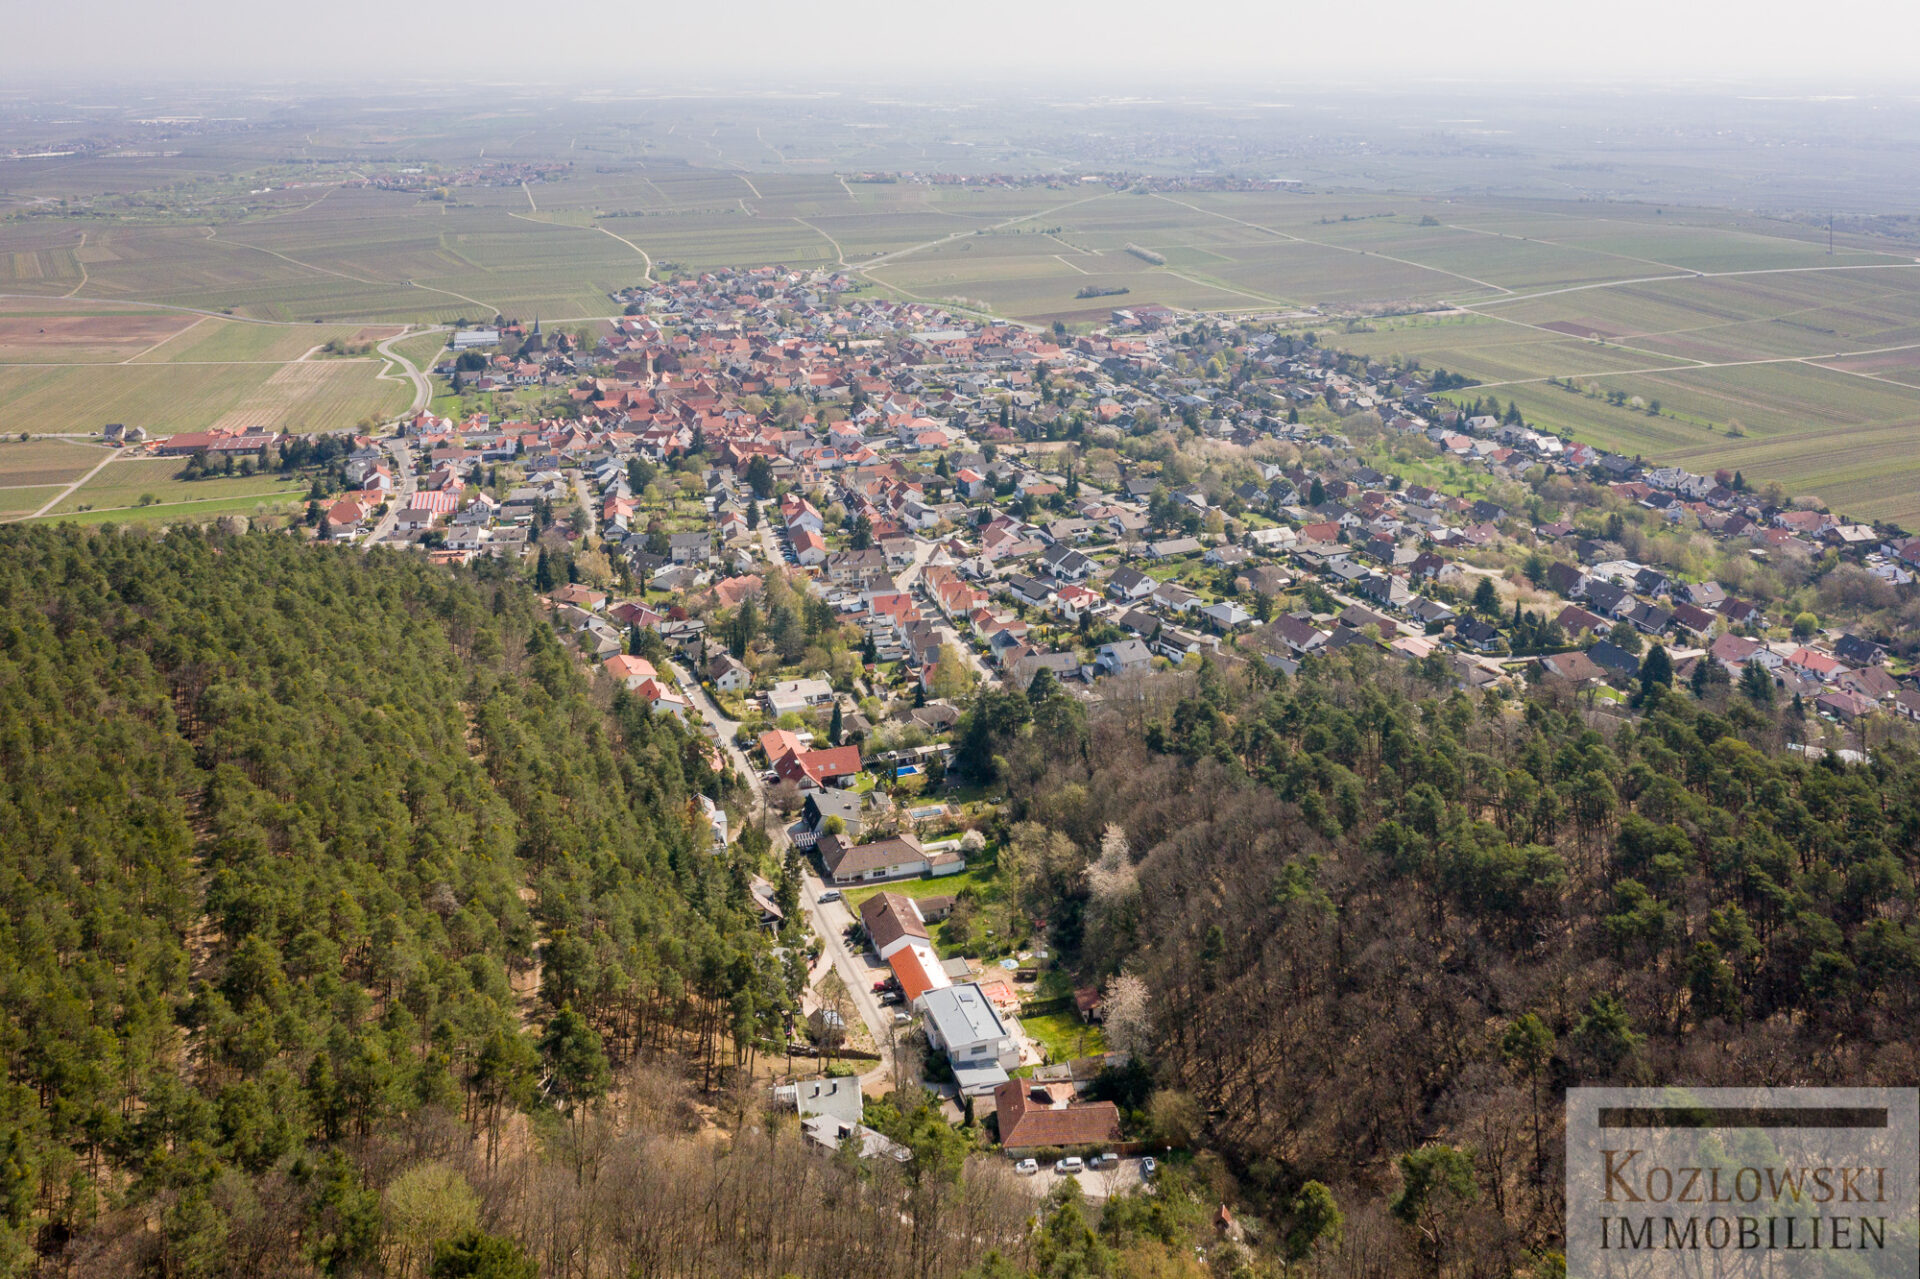 Luftaufnahme von Weisenheim am Berg mit dicht gedrängten Häusern, angrenzend an Ackerland und Waldgebiet, unter klarem Himmel.